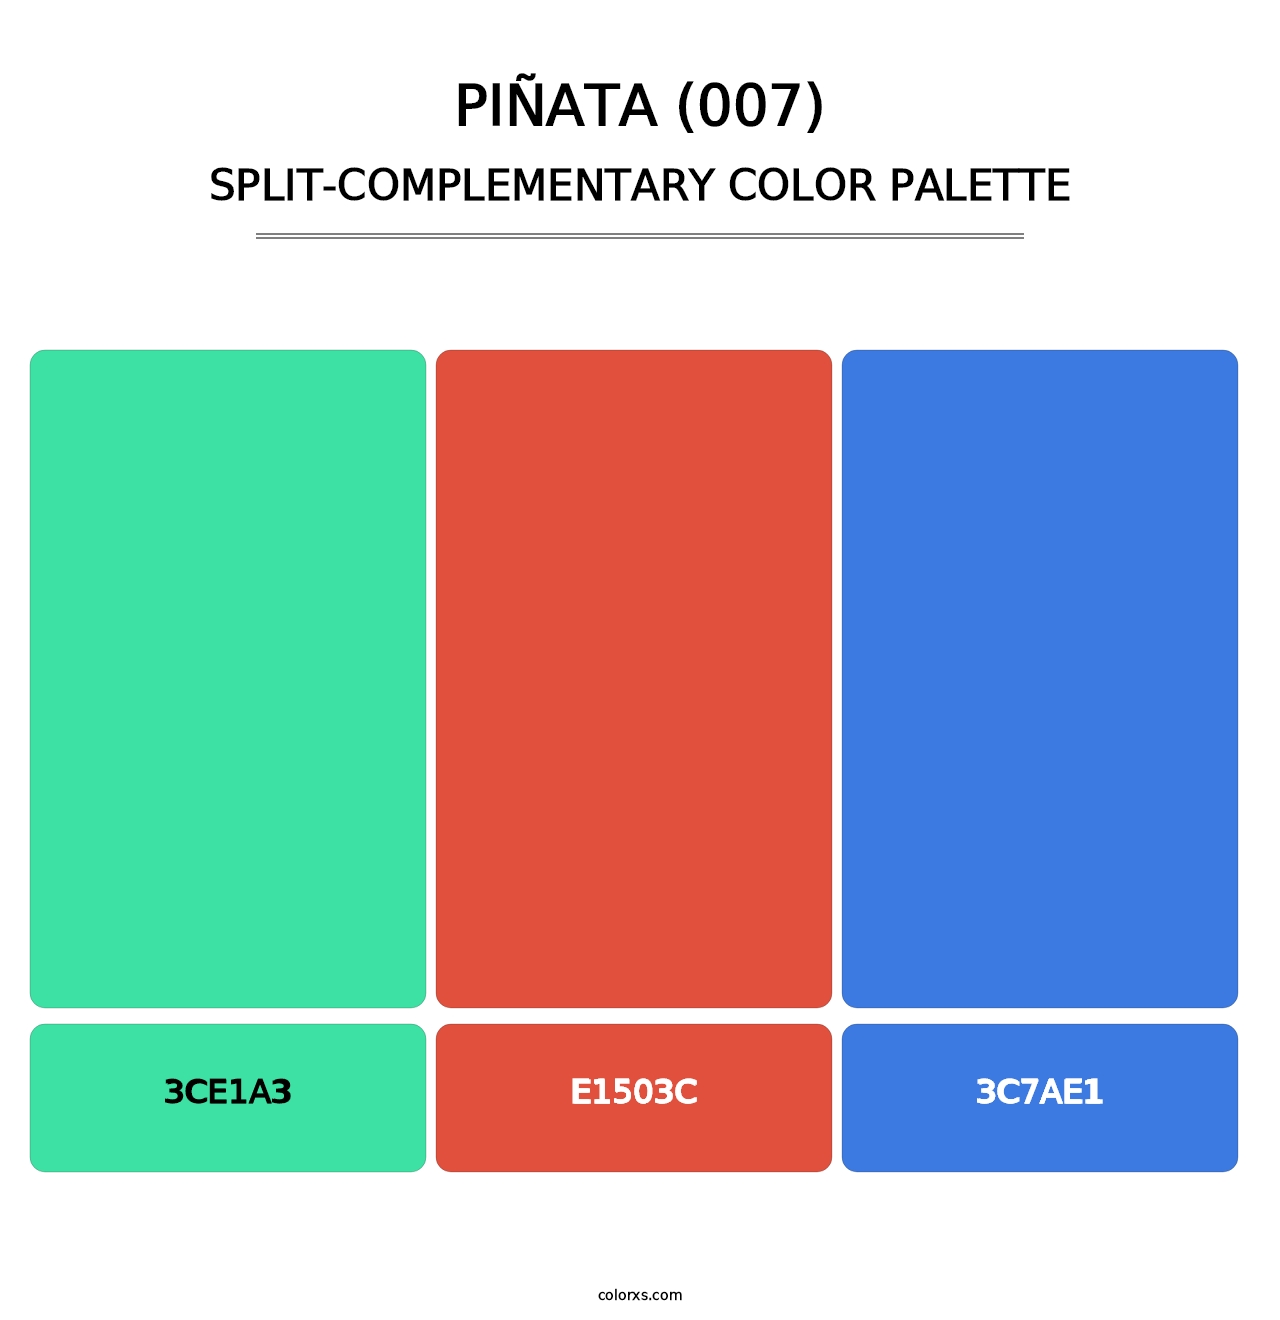 Piñata (007) - Split-Complementary Color Palette